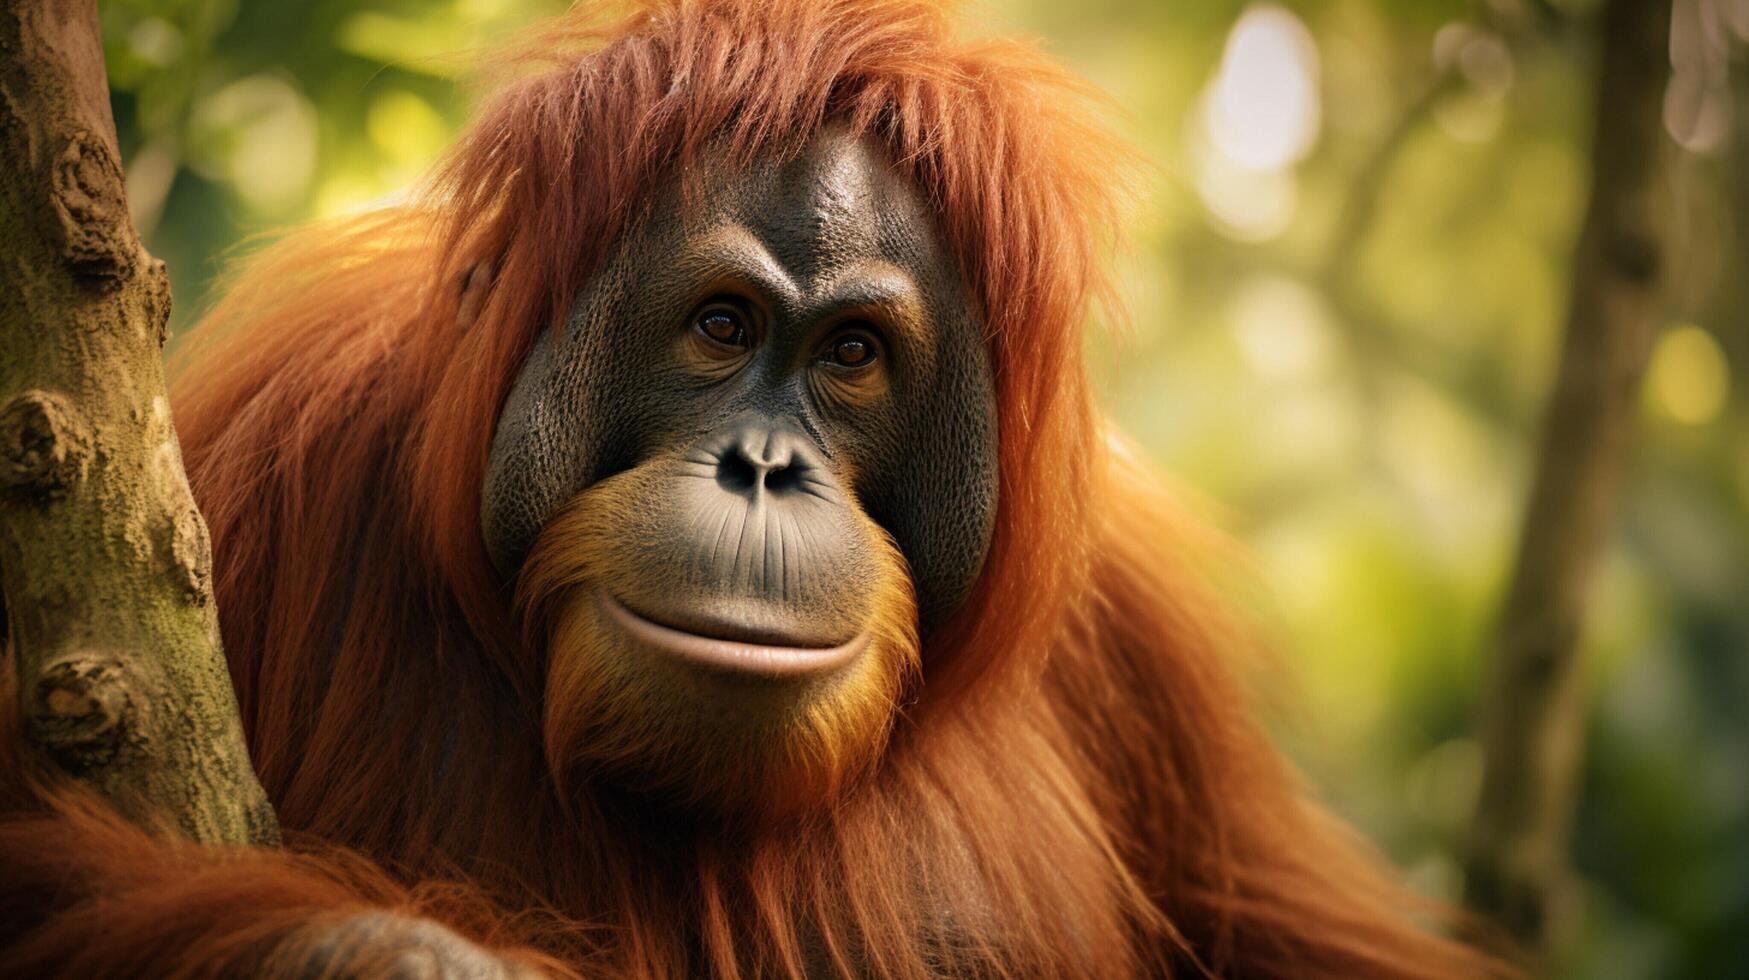 ai gerado orangotango Alto qualidade imagem foto